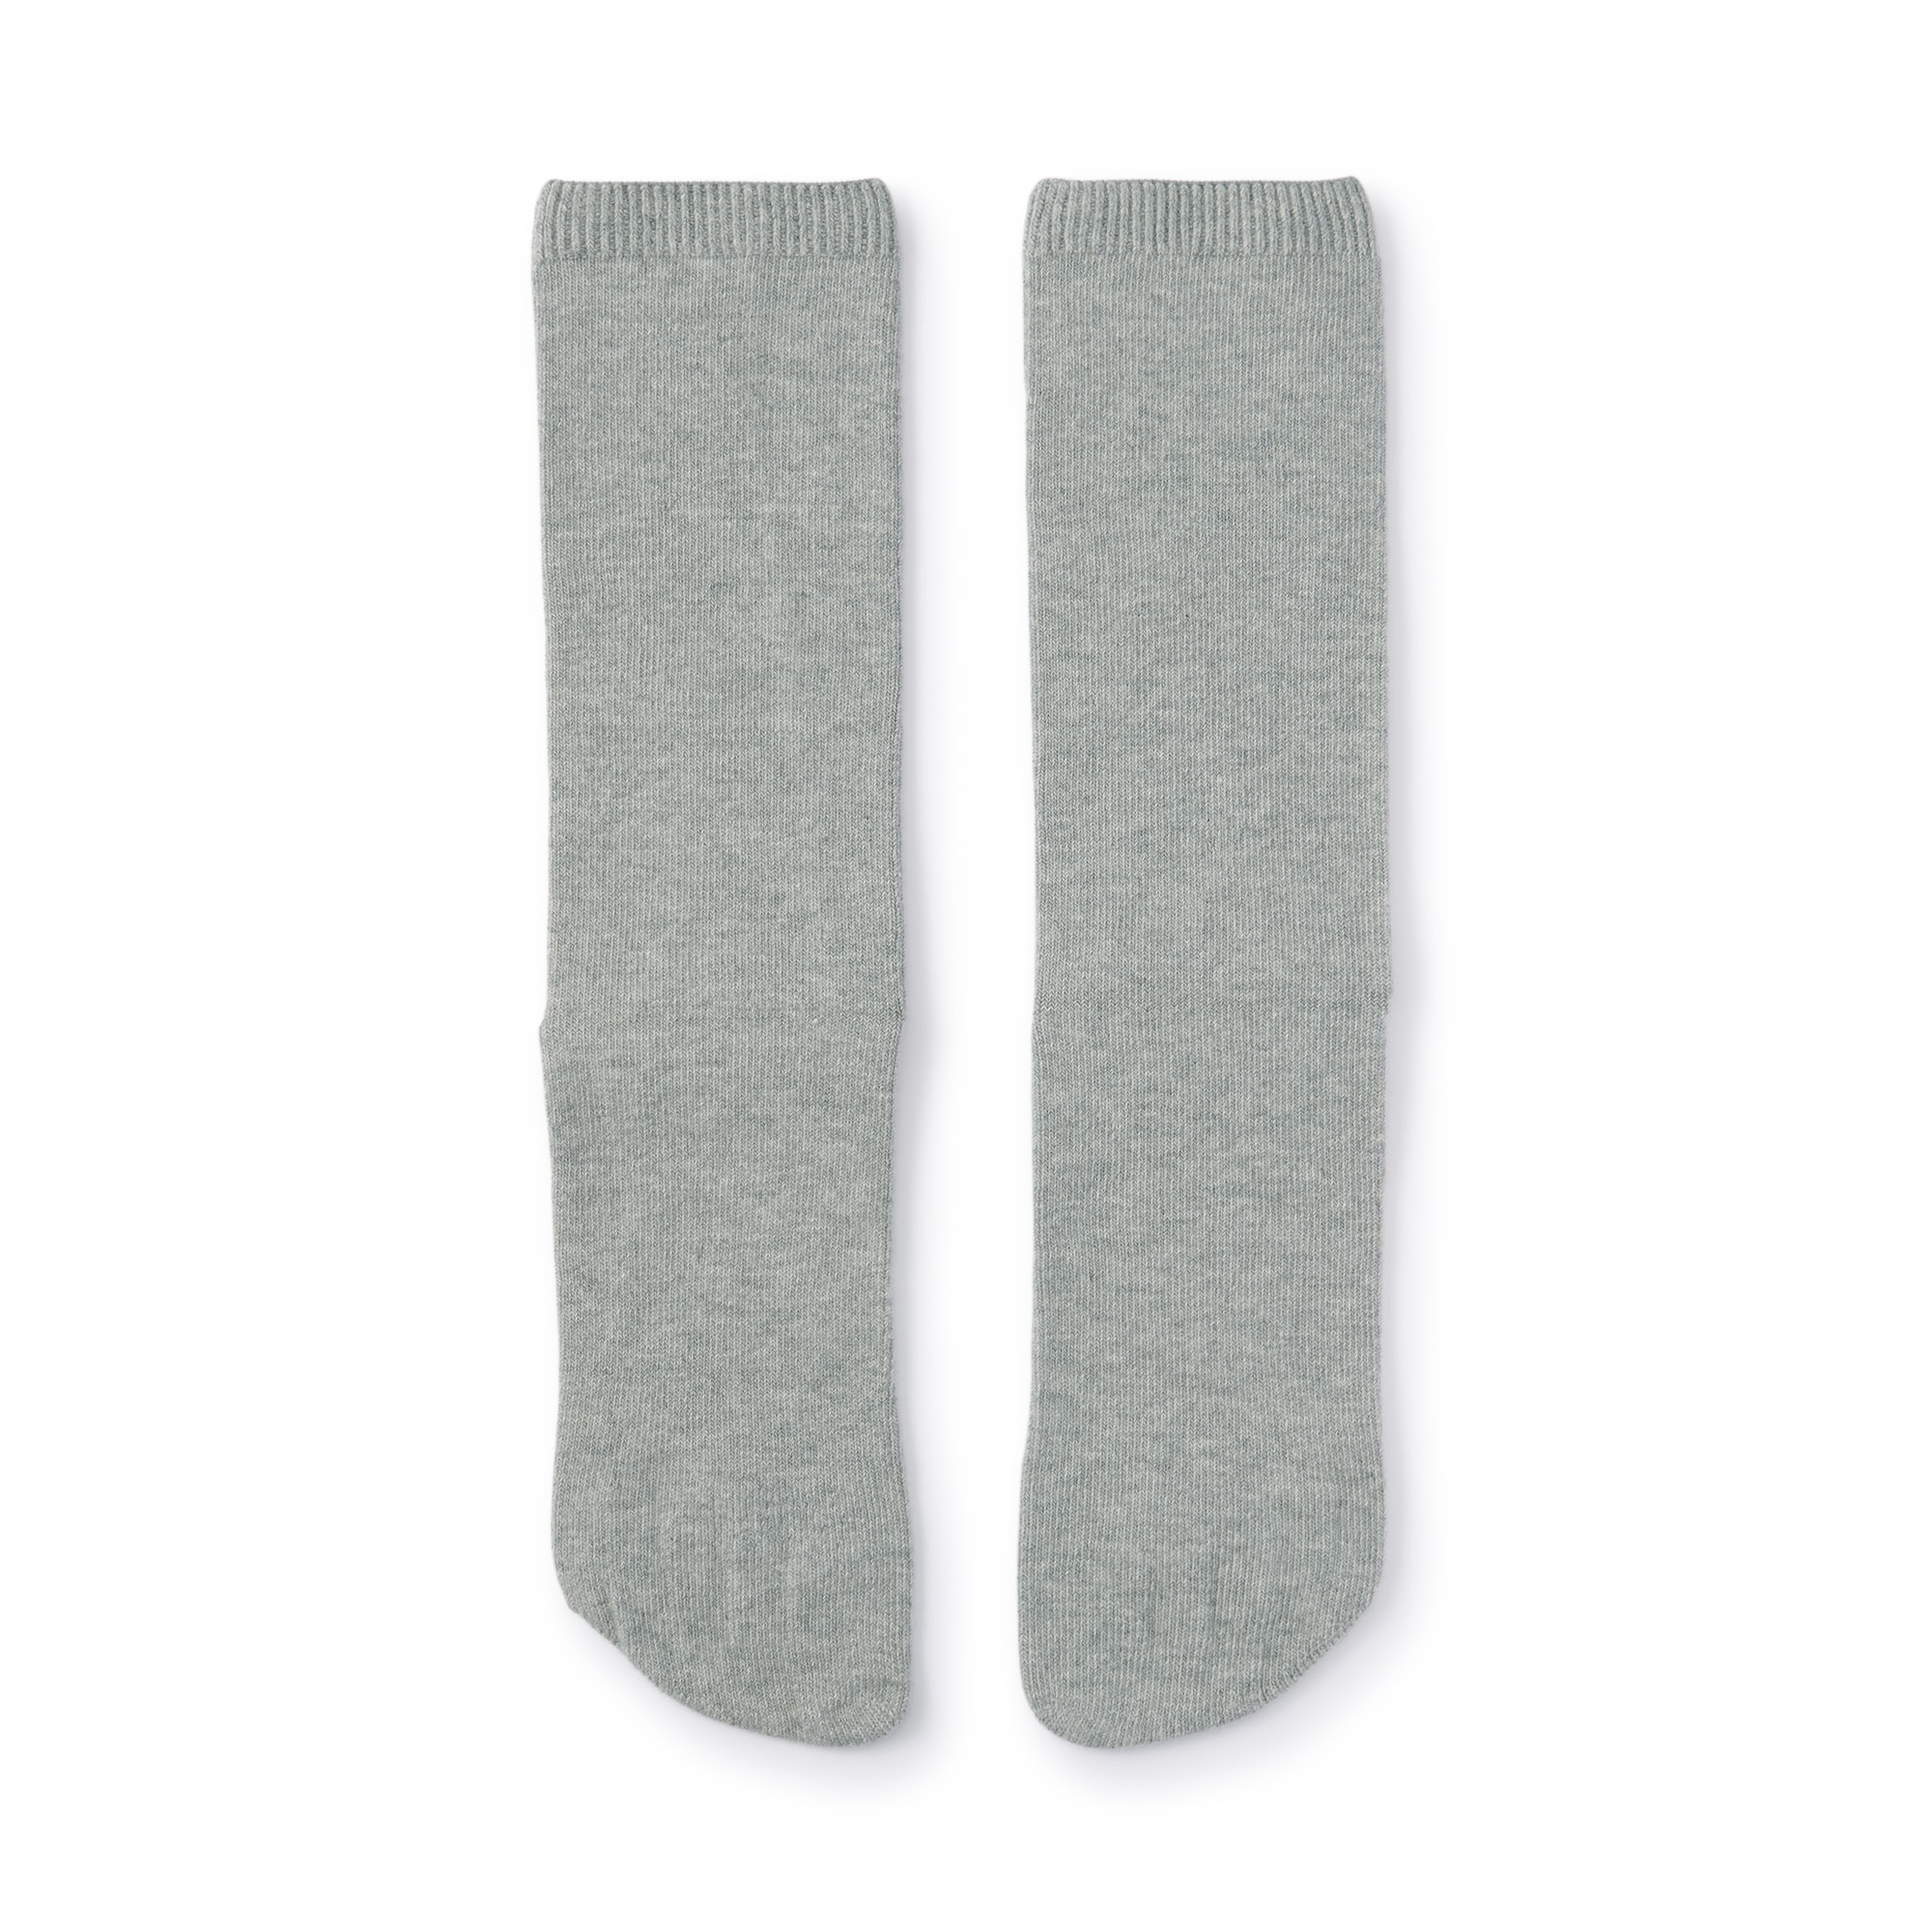 무인양품 일본 남성 페이크삭스 발가락 양말 중목 27cm 그레이